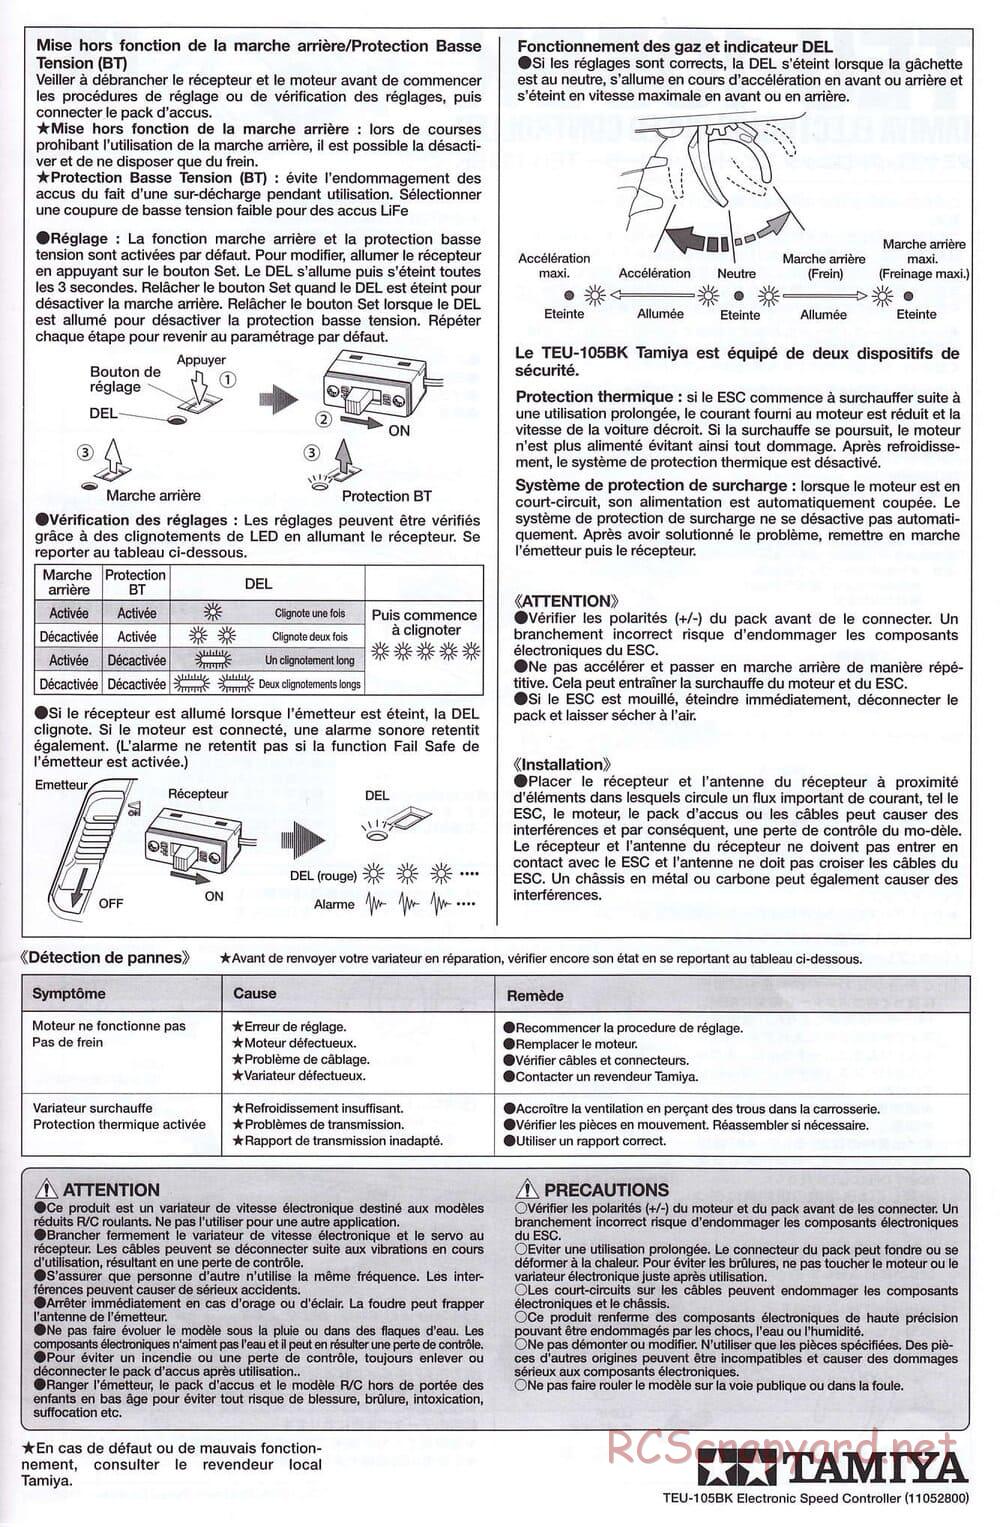 Tamiya - SA TT-02 ESC - Manual - Page 4